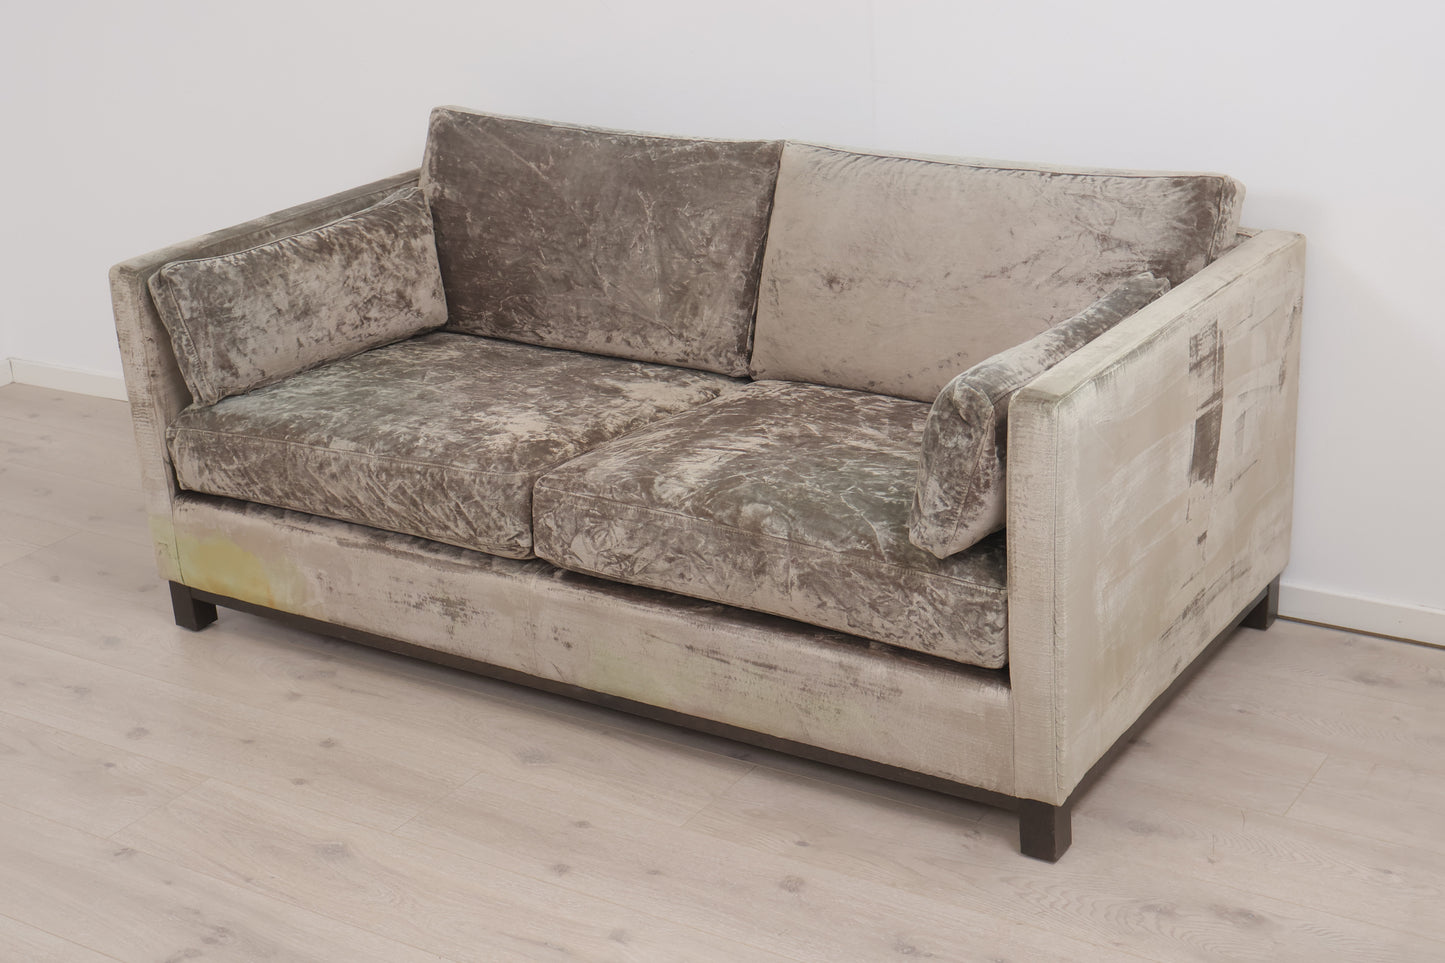 Nyrenset | Slettvoll Dublin 2-seter sofa i velur